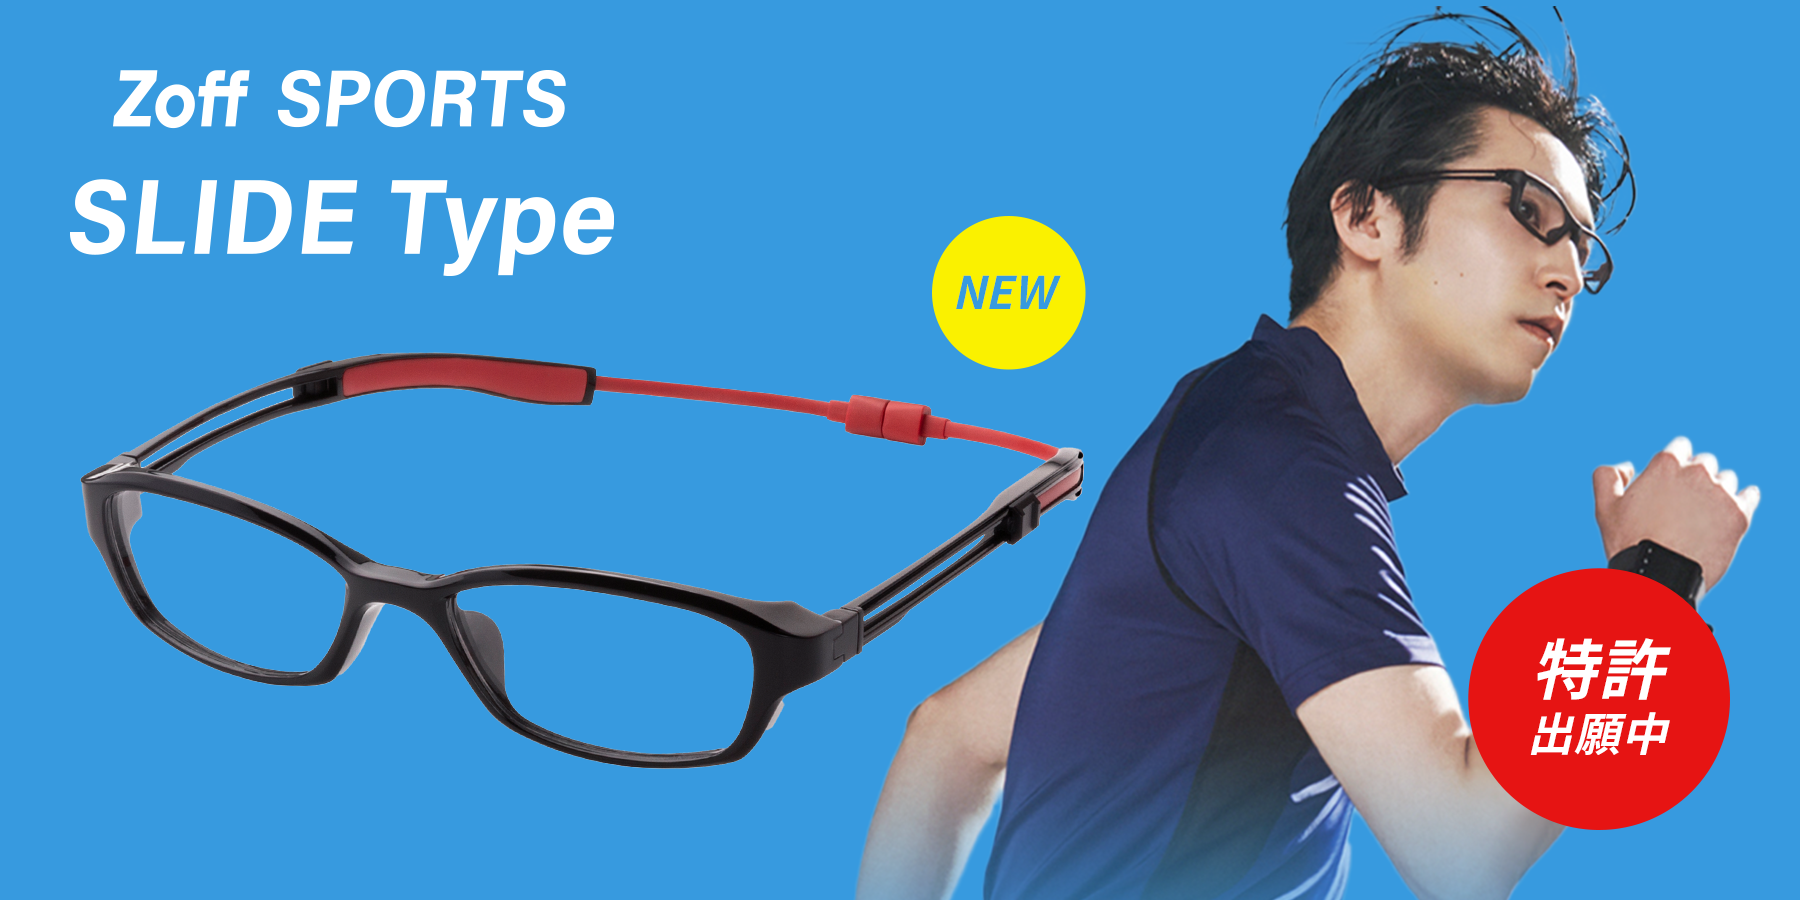 メガネのつるが頭部を360度ホールド！スポーツできるメガネ「Zoff SPORTS SLIDE TYPE」に新モデルが登場